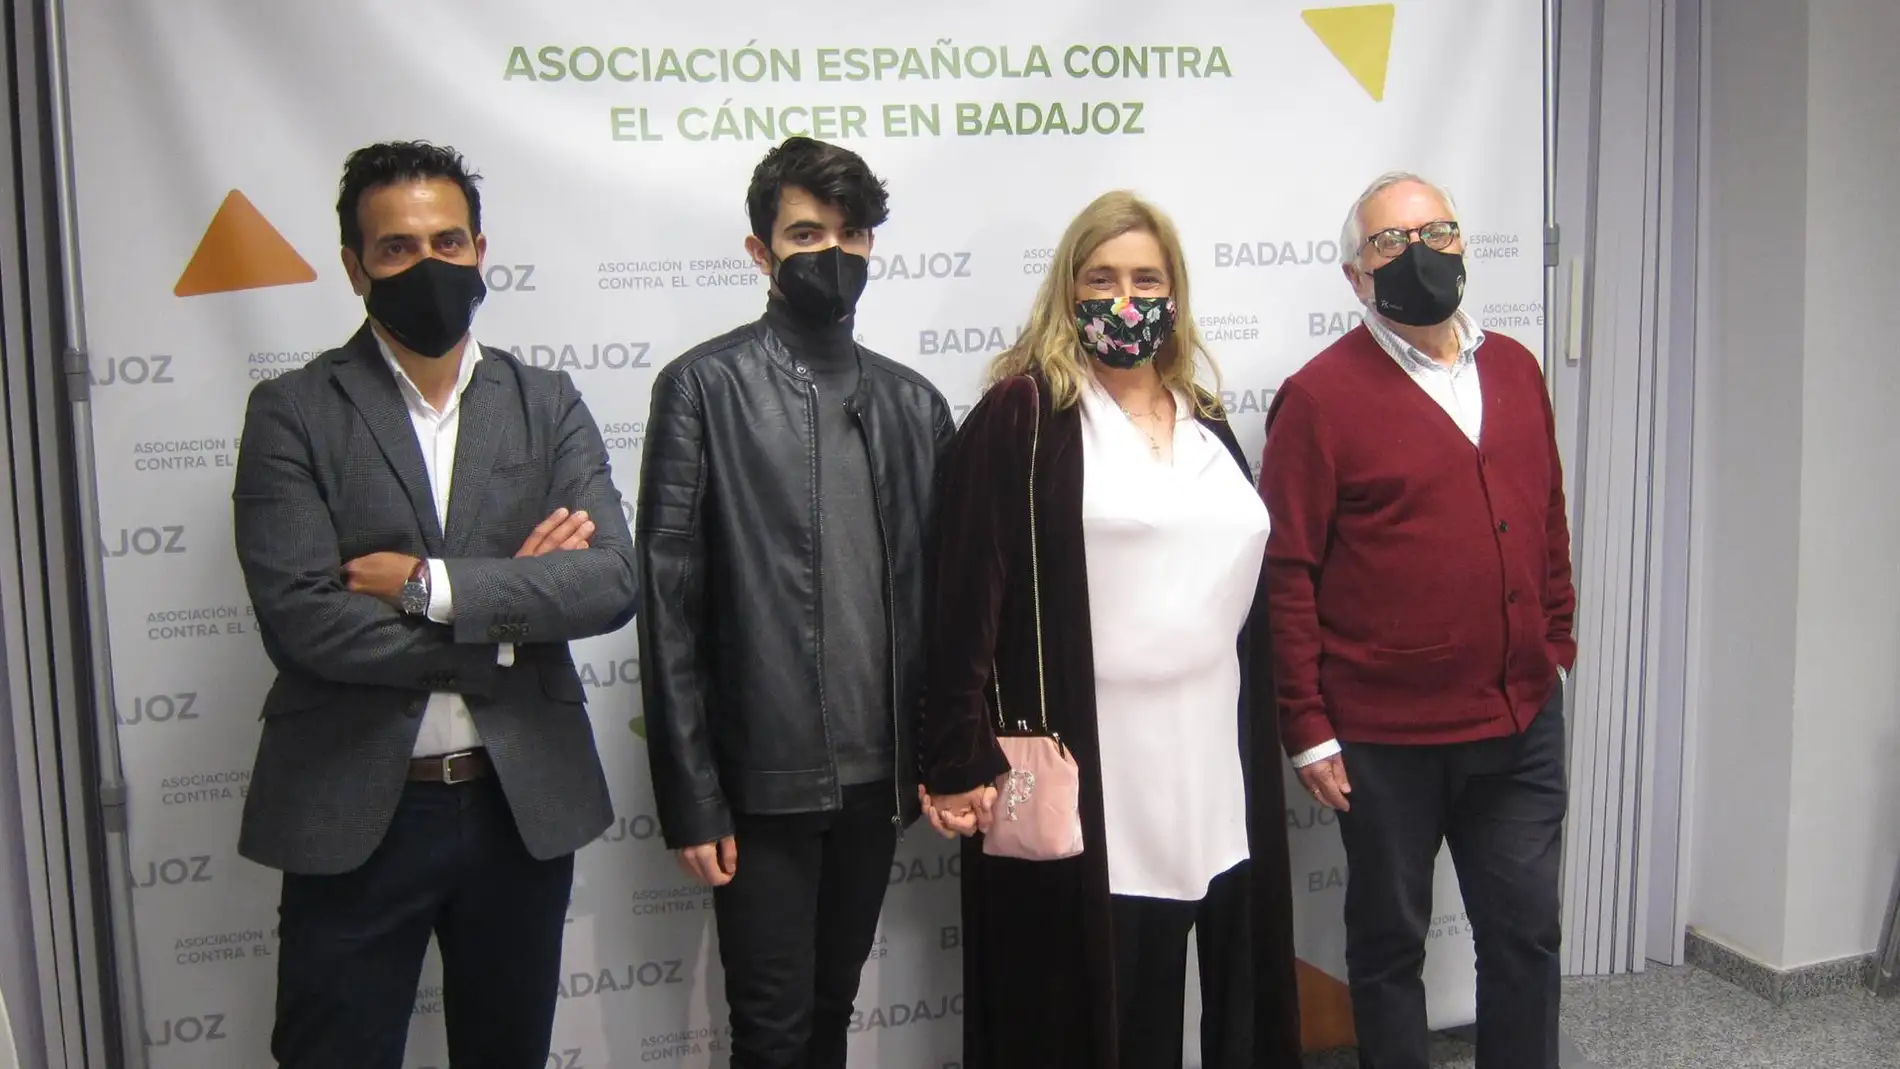 Los bailaores Antonio Canales y Pilar y Diego Andújar protagonizan el espectáculo 'Batalyaws' a beneficio de la Sociedad Española contra el Cancer